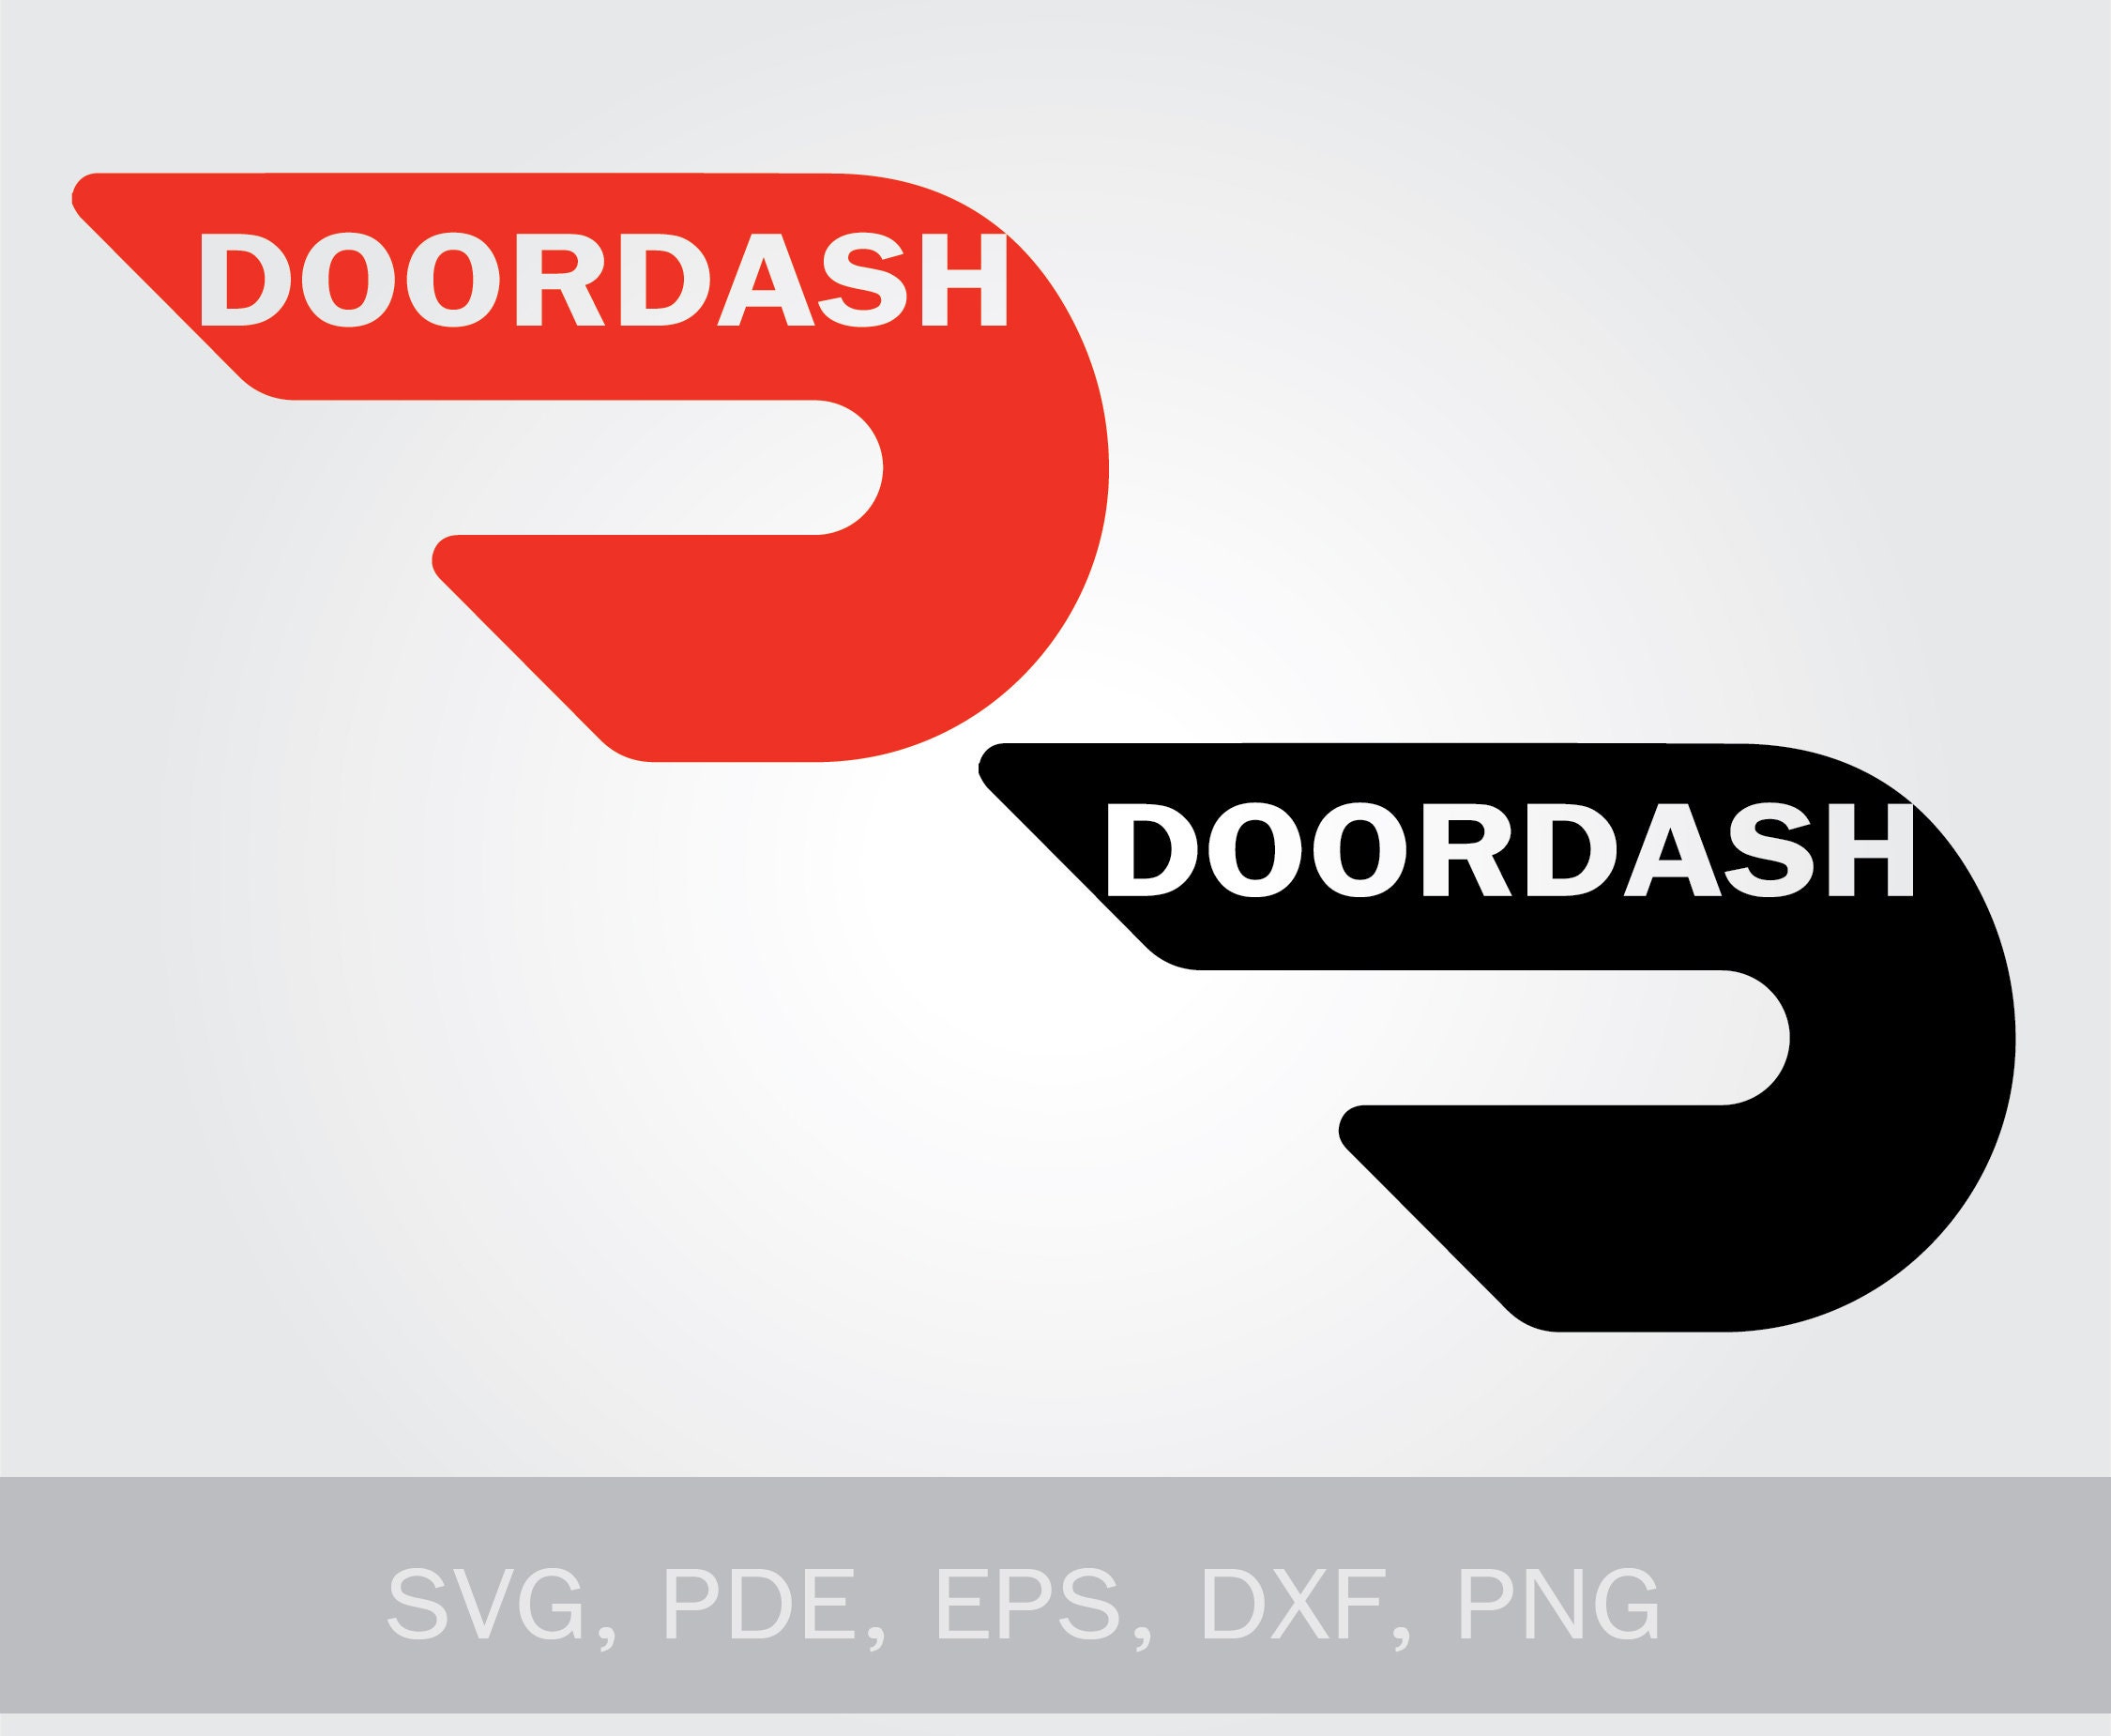 2 DoorDash logo Black Red or White Professional Doordash | Etsy